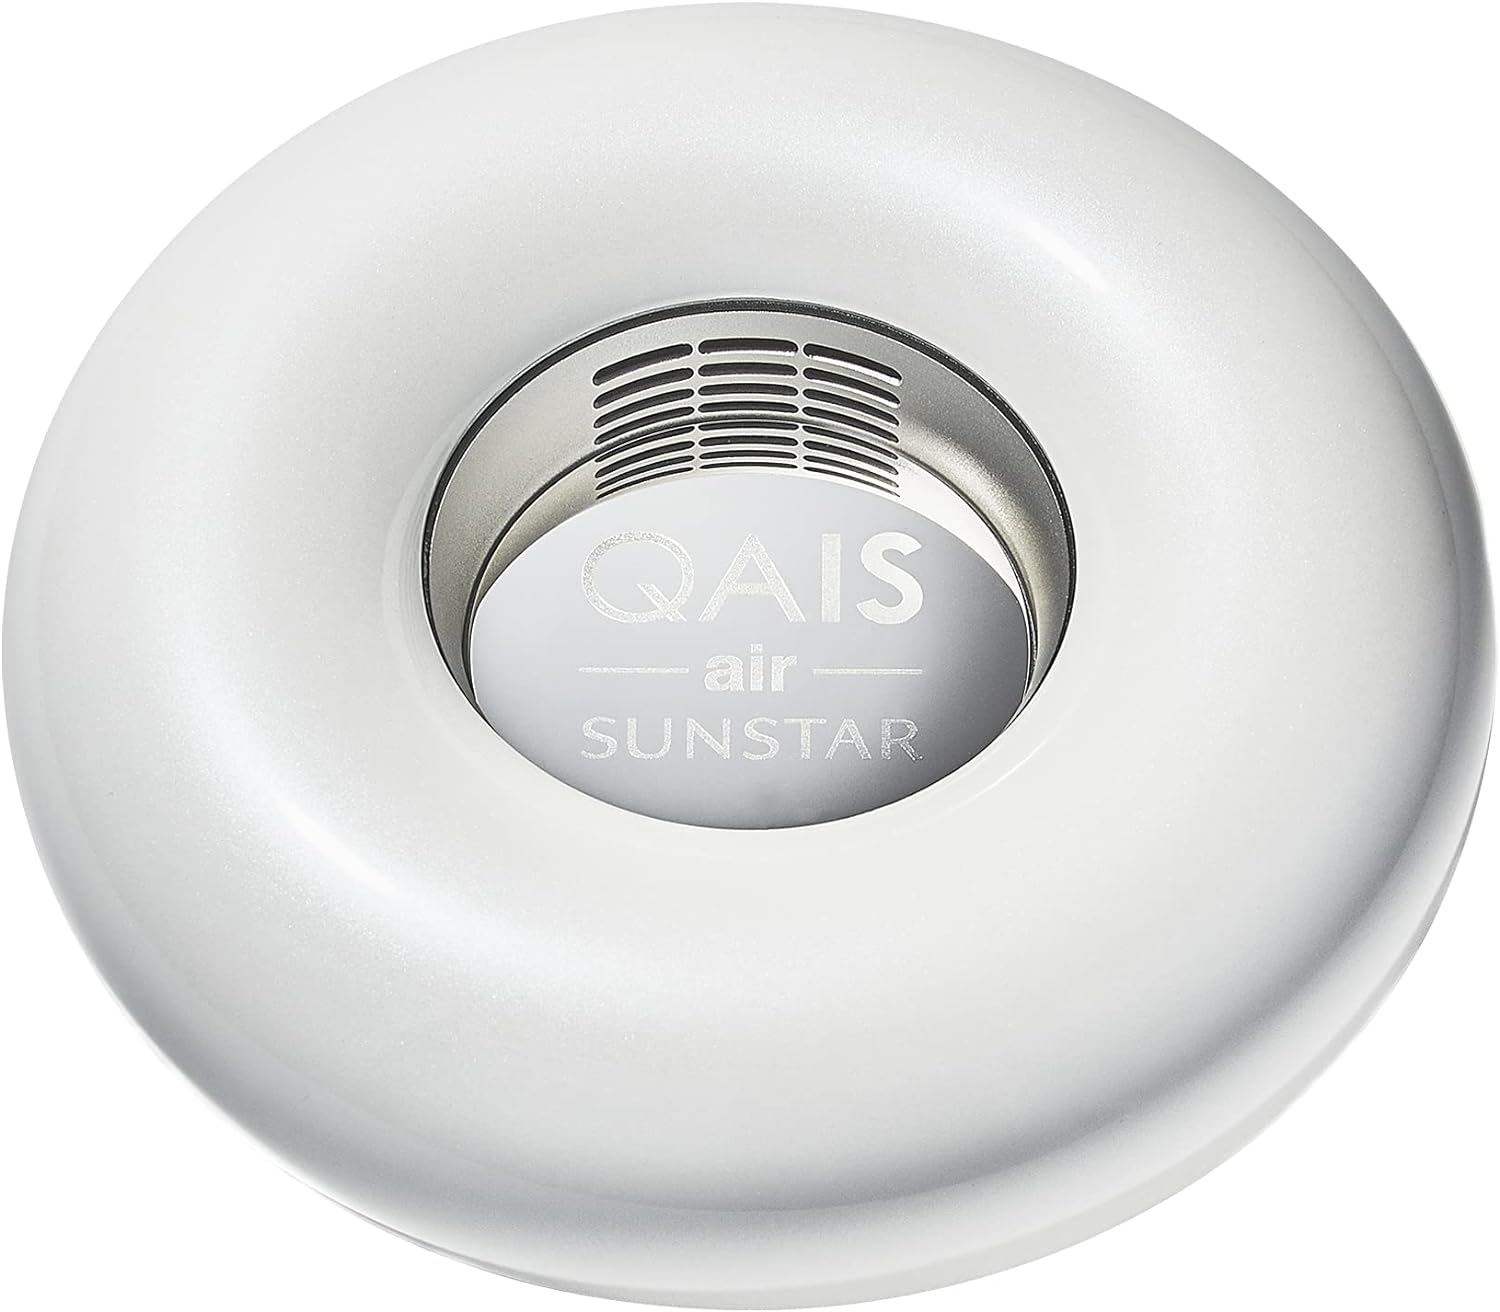 ト送料込 サンスター QAIS air DD01ARR 除菌脱臭機 UV 光触媒方式